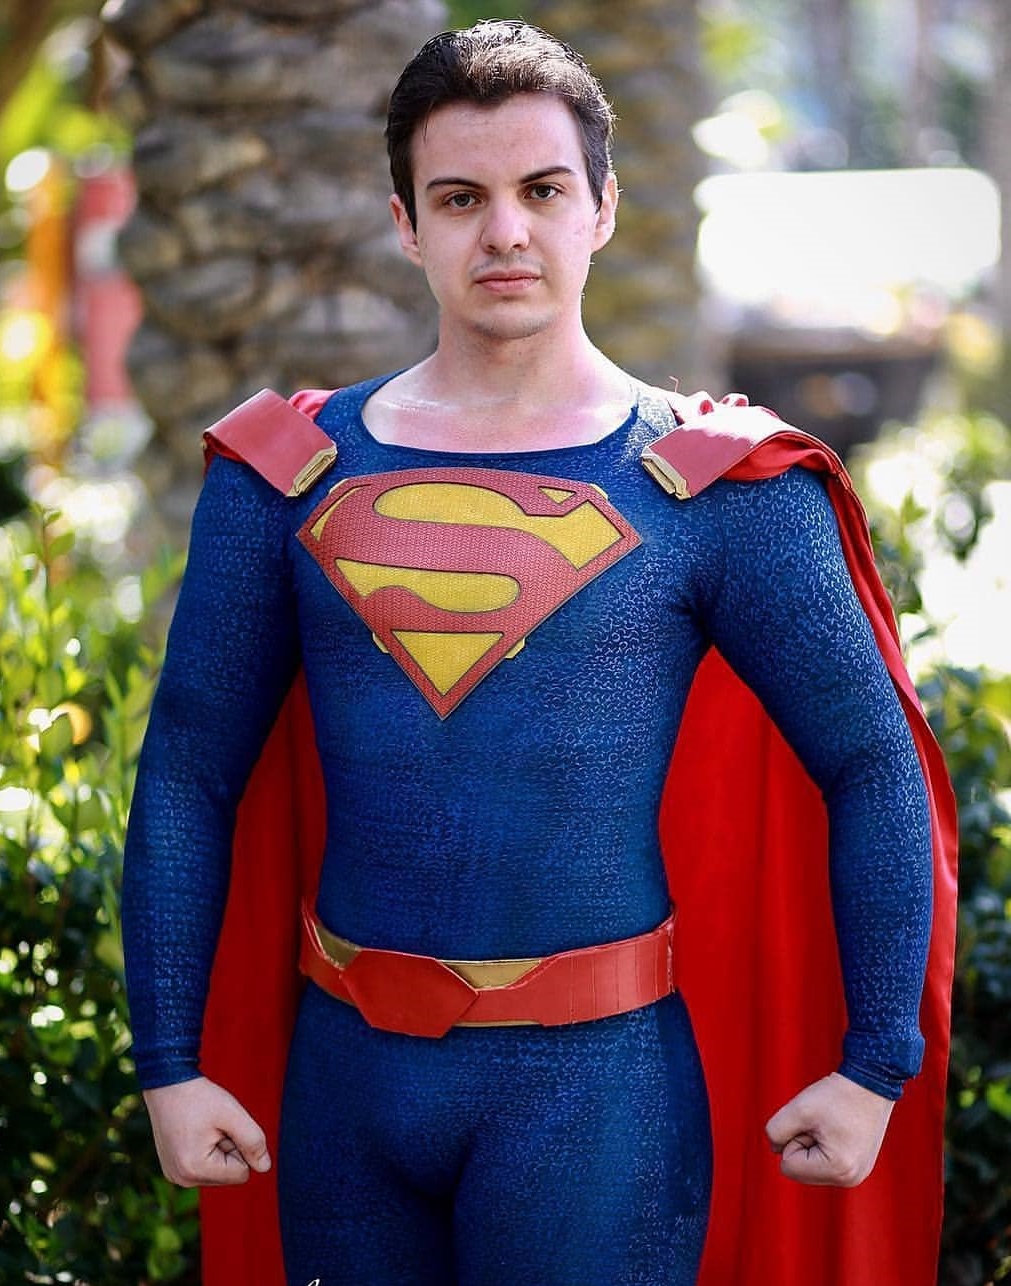 Superman CW Cosplay @ Anaheim Wonder Con 2019 by Brokephi316 on DeviantArt